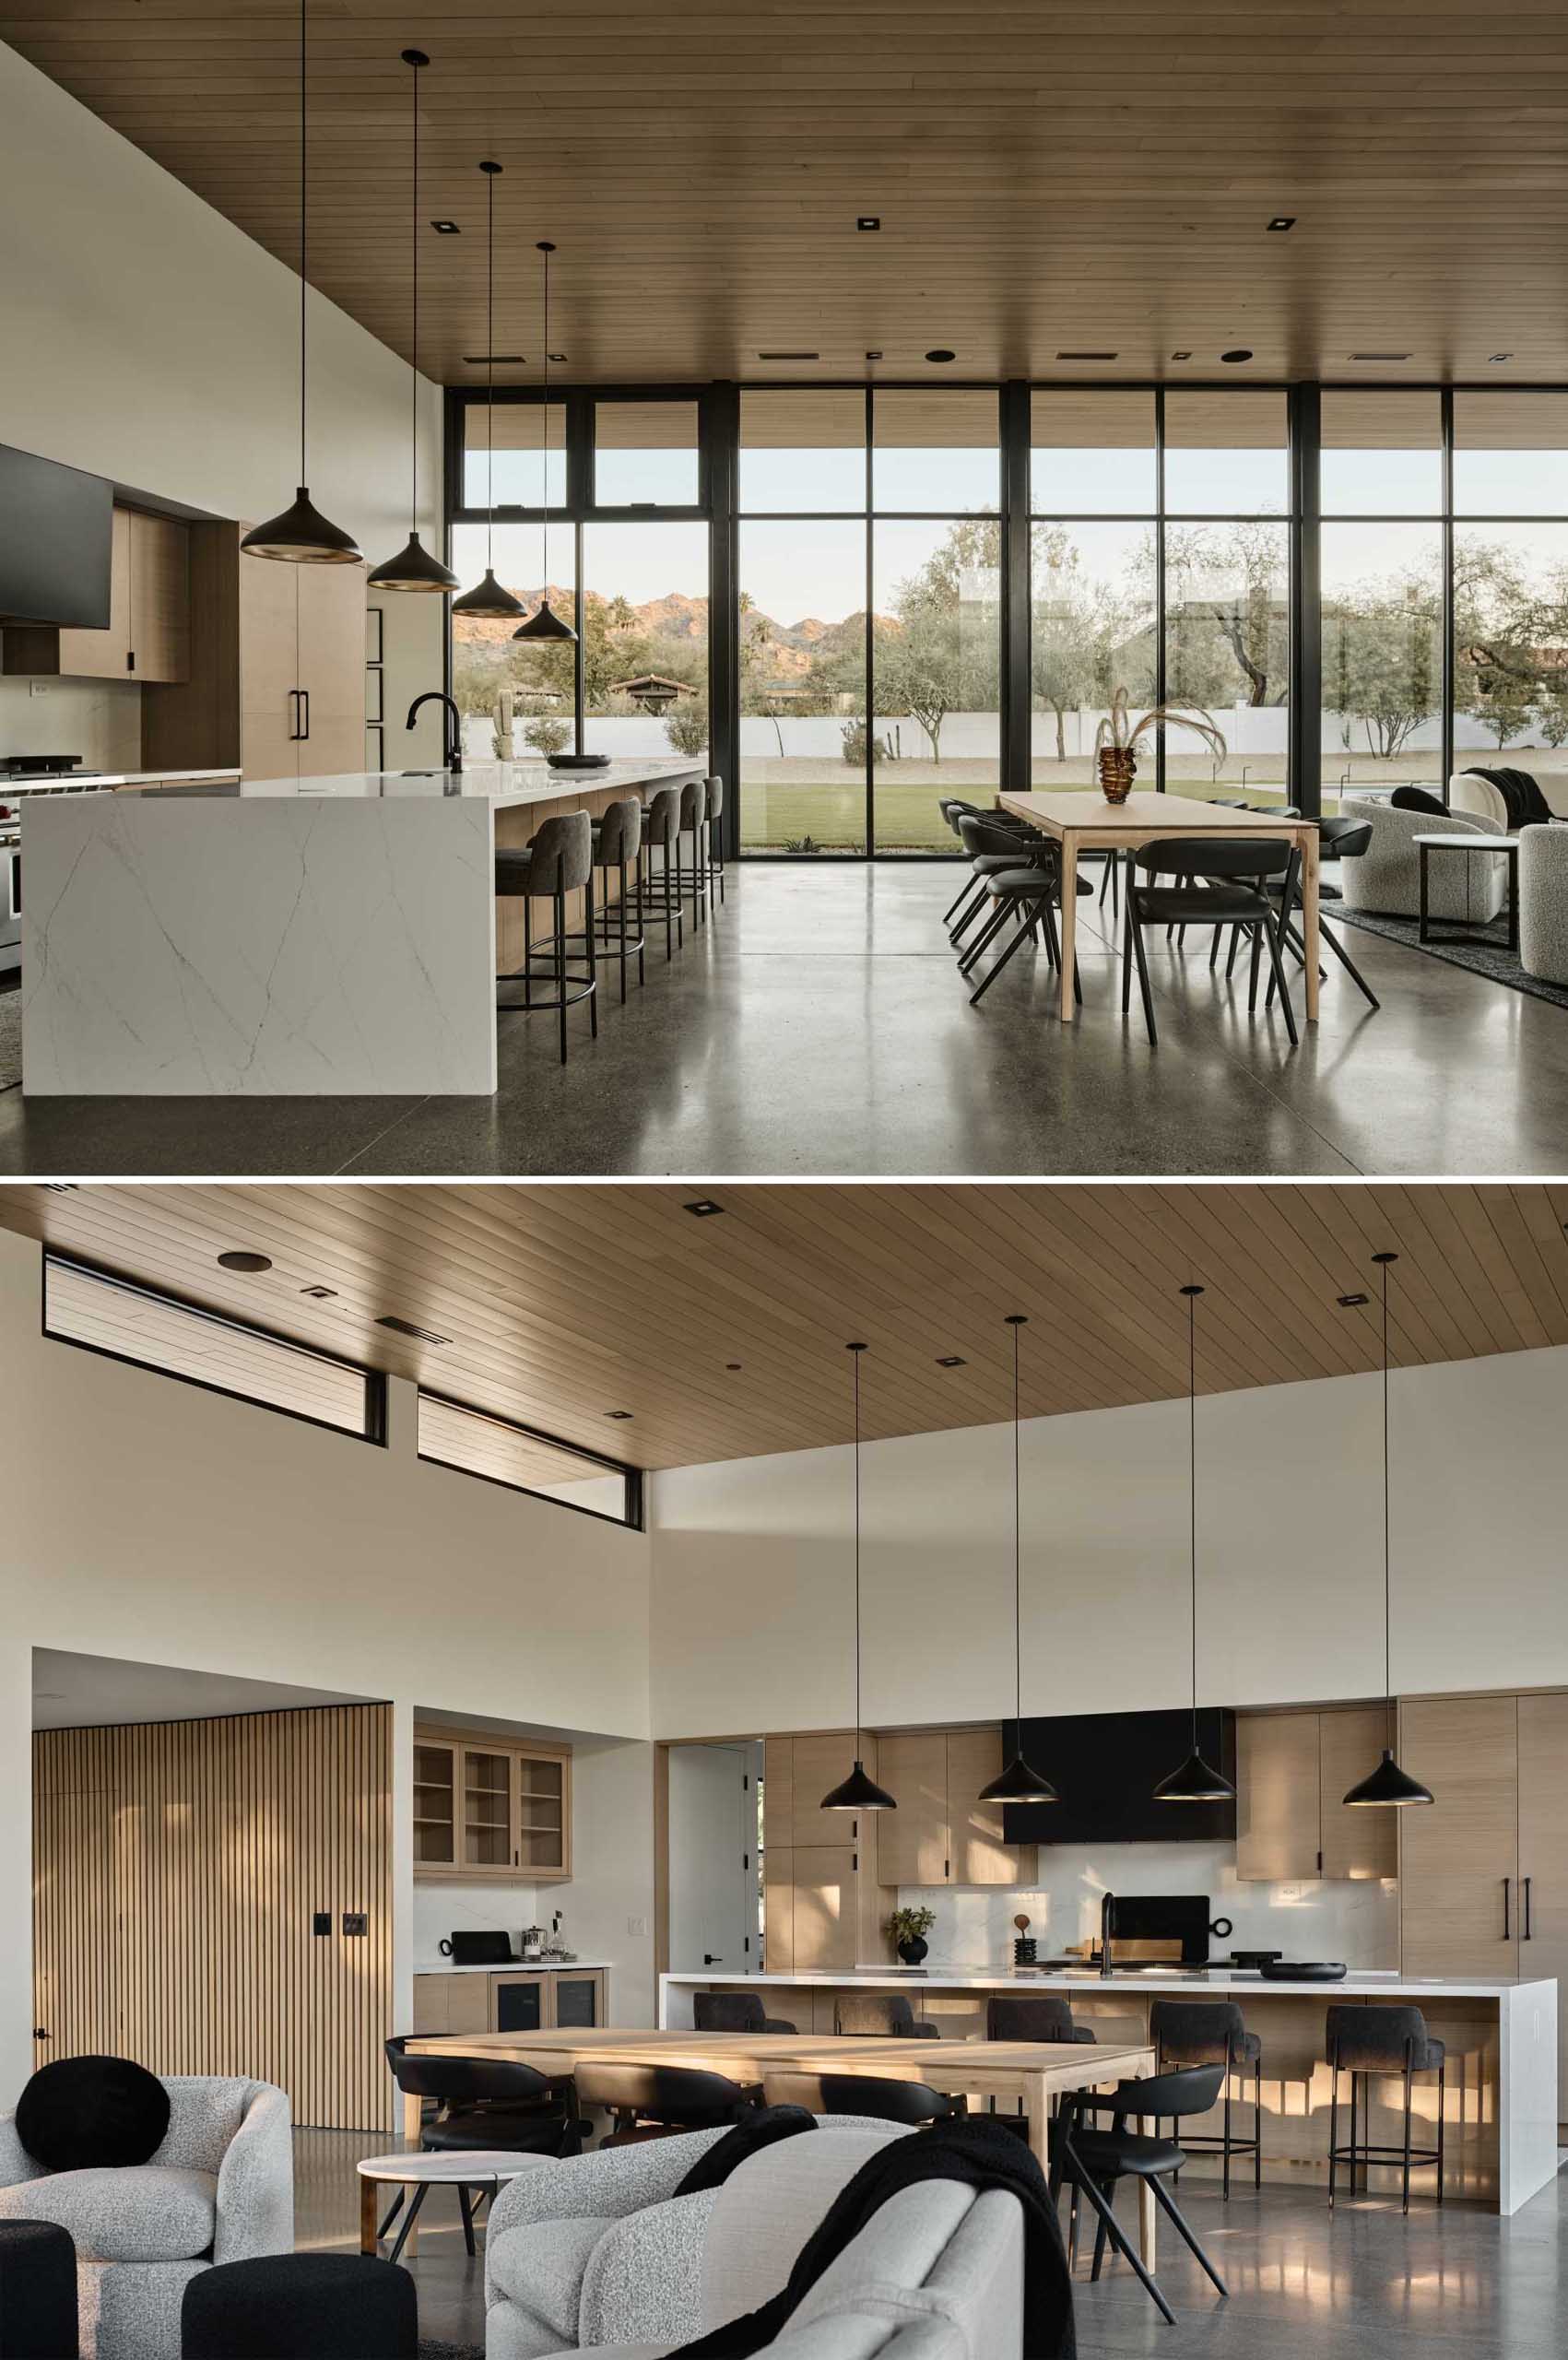 ناهارخوری و آشپزخانه هر دو شامل ،اصر چوبی هستند که مکمل سقف چوبی بالا هستند.